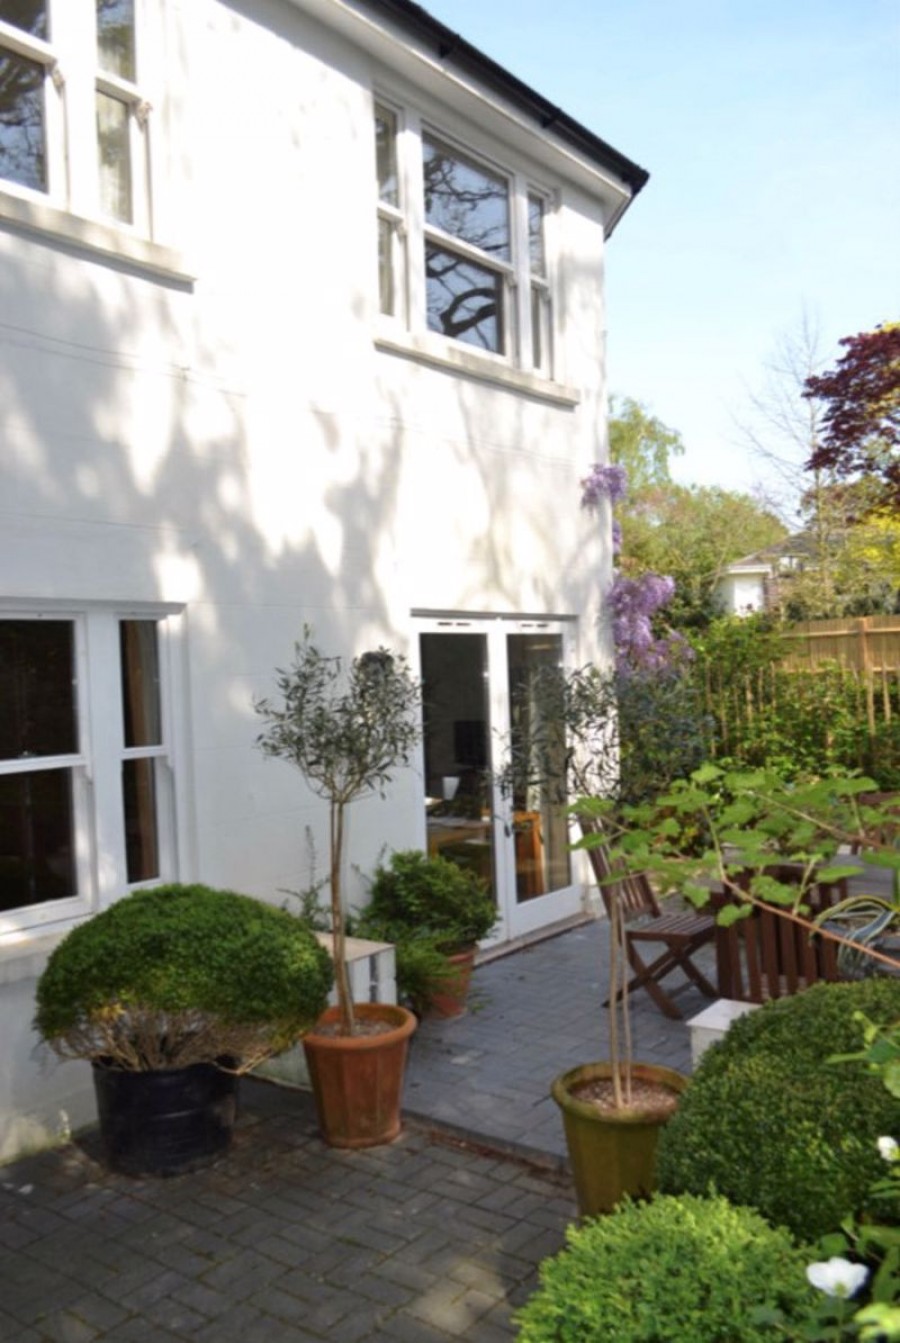 Images for 1 Bedroom Ground Floor Apartment with Courtyard Garden & Parking, Broadwater Down, Tunbridge Wells